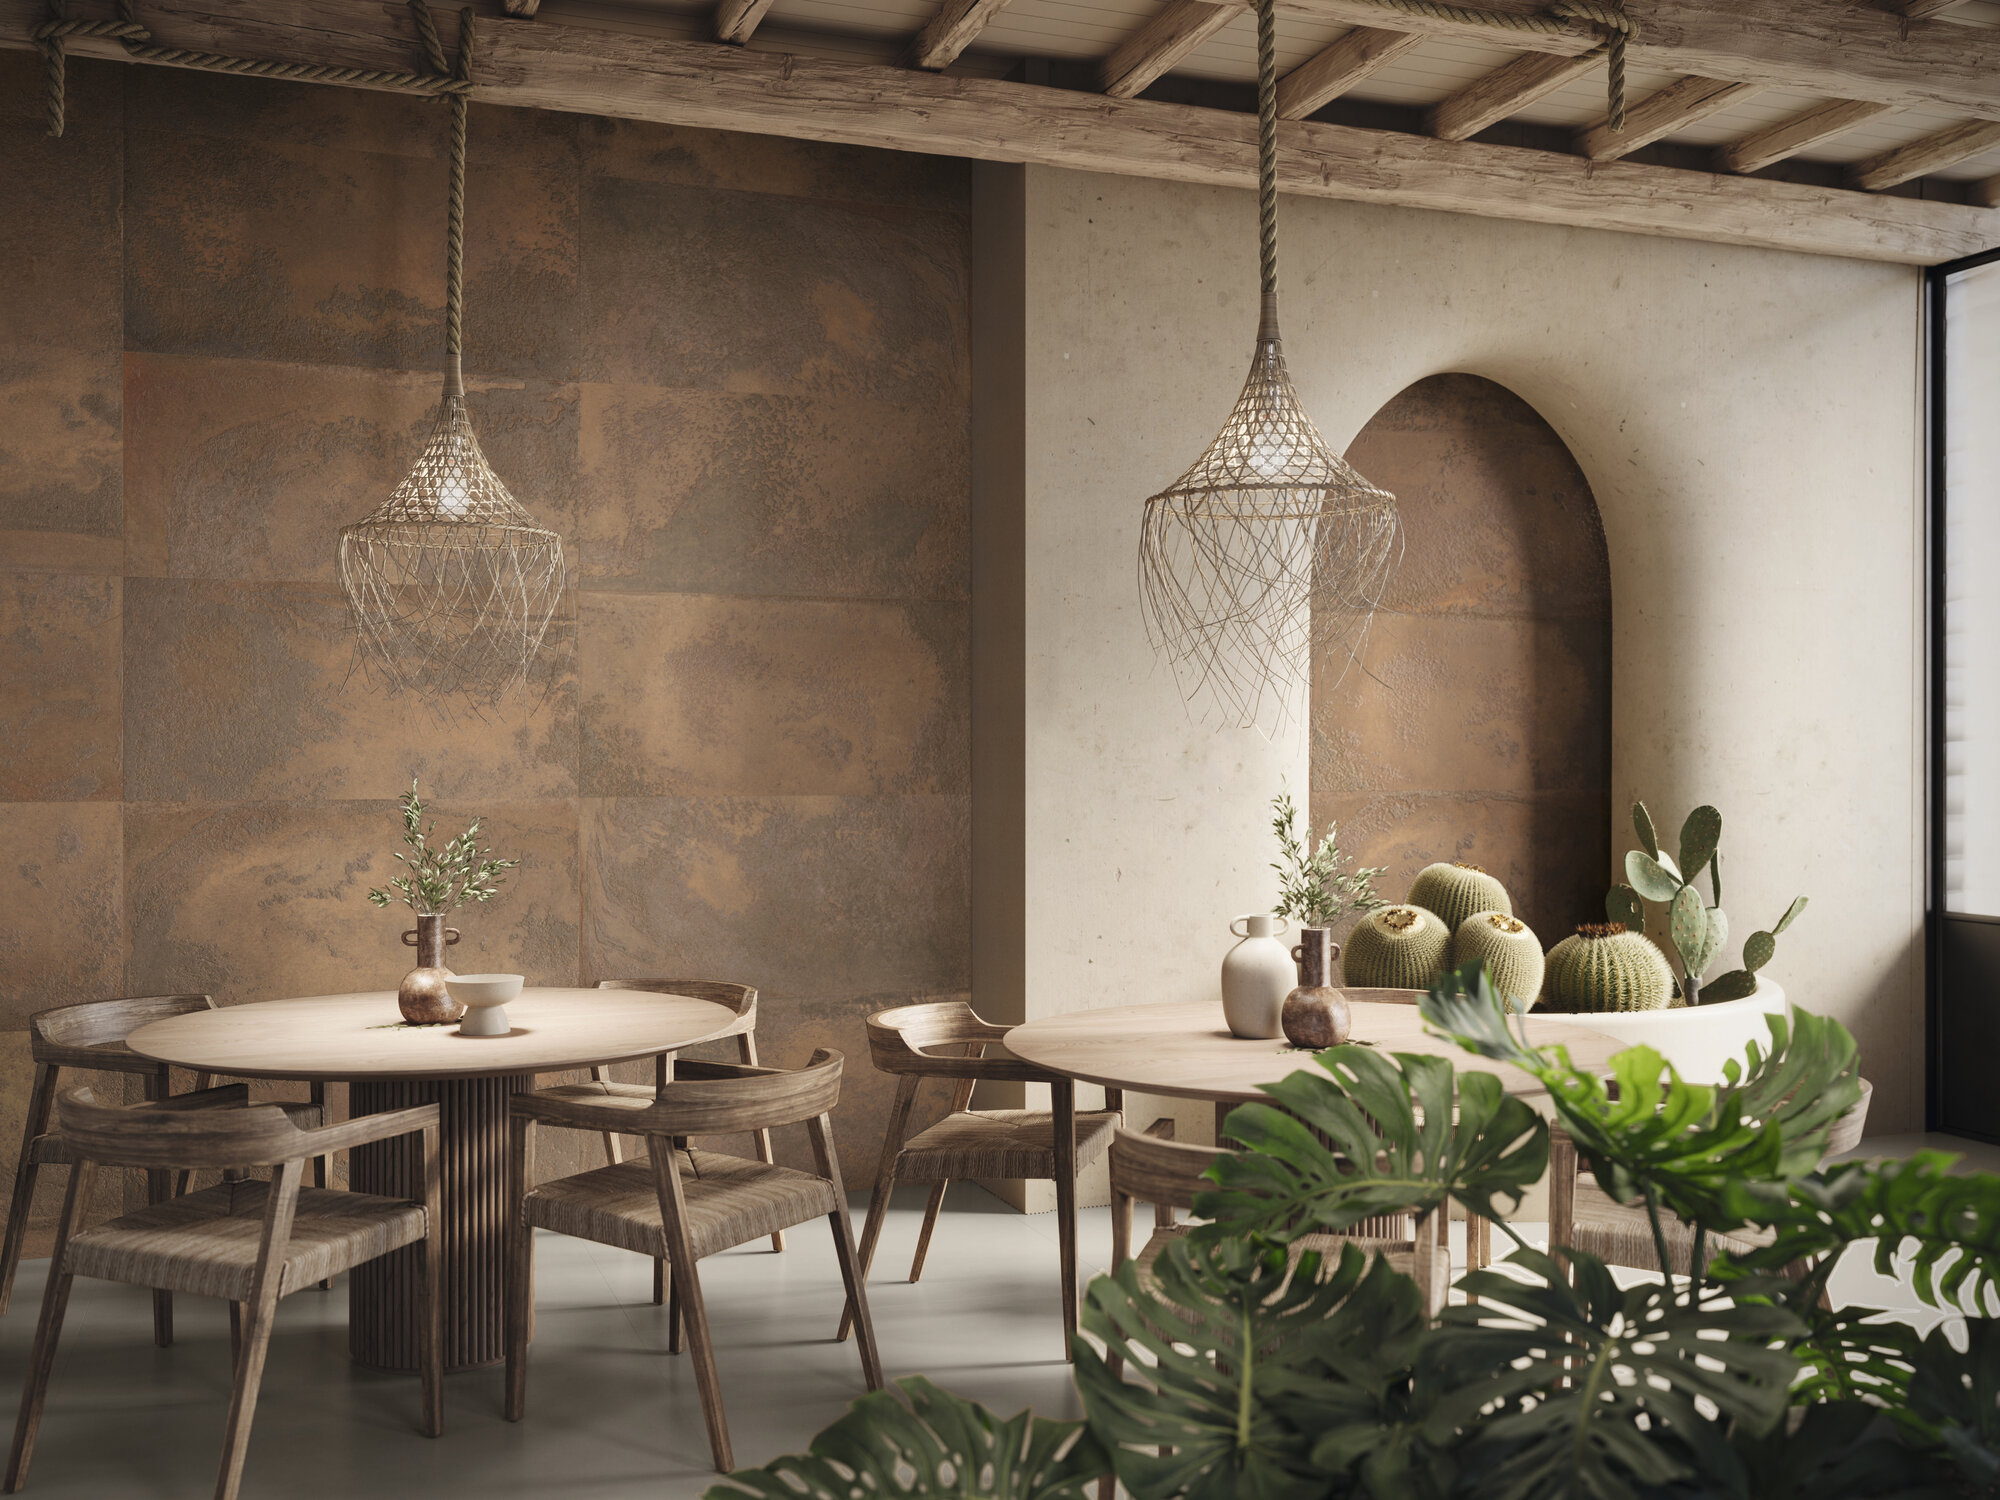 Restauracja z brązowymi płytkami imitującymi metal na ścianie, z okrągłymi stolikami z krzesłami i lampami wiszącymi